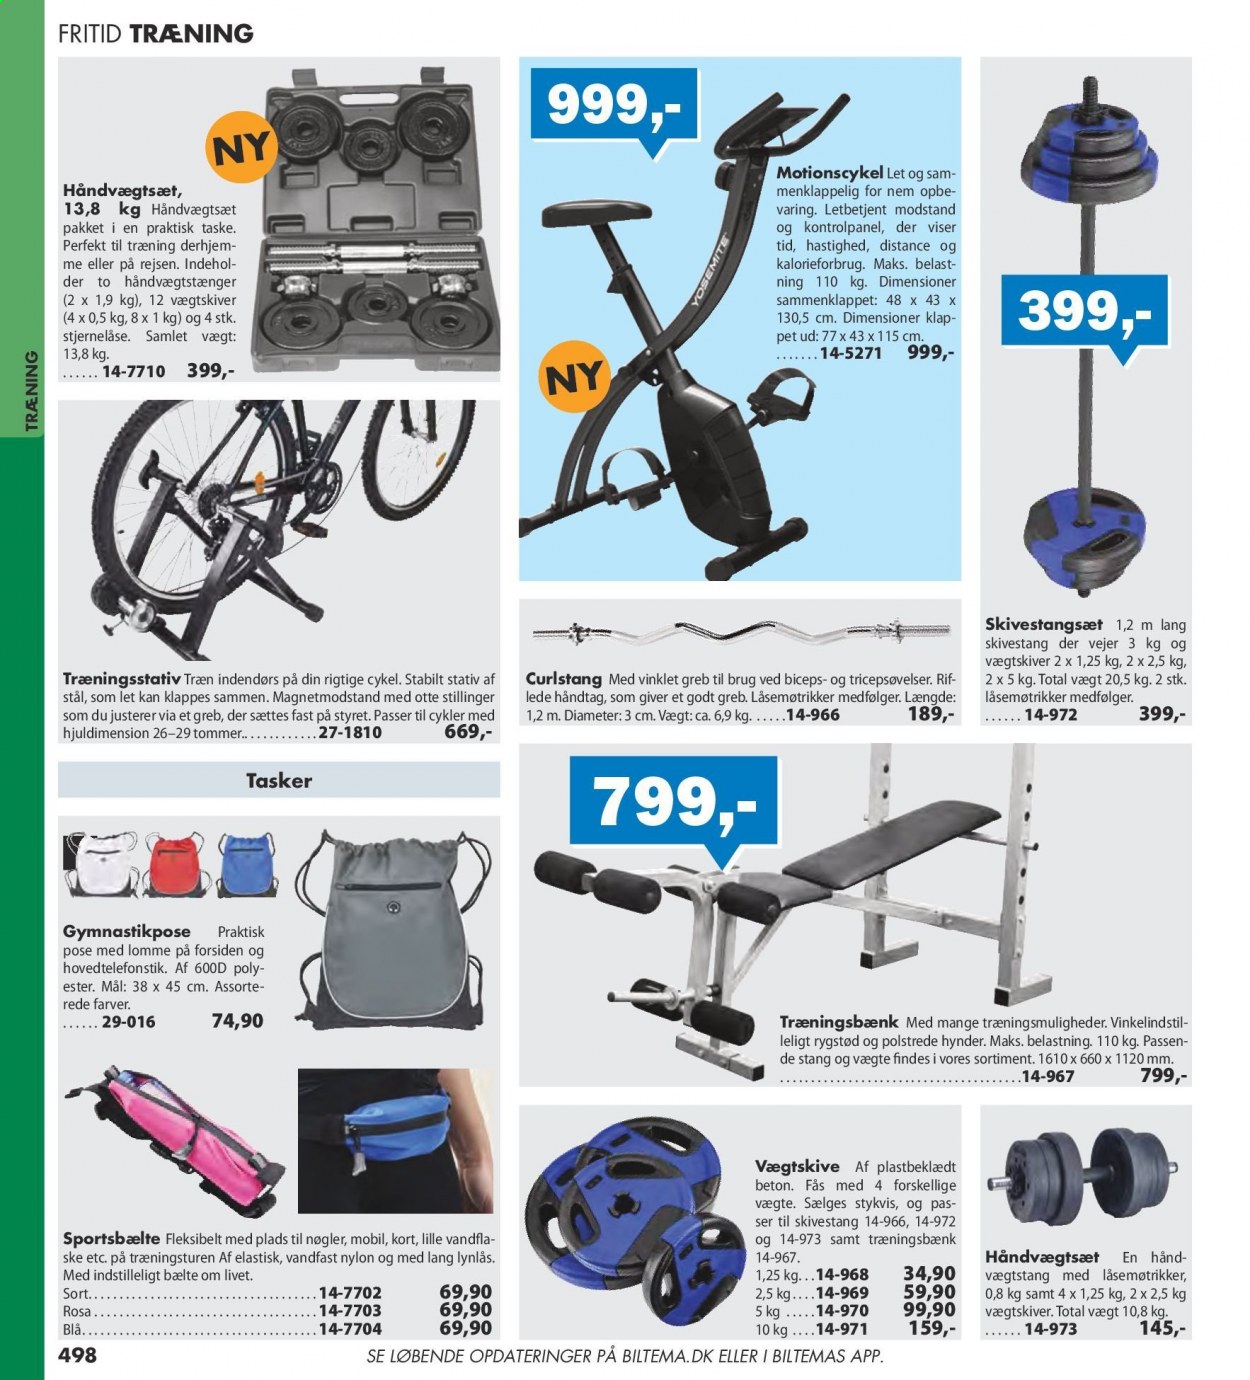 thumbnail - Biltema tilbud  - tilbudsprodukter - ske, taske, cykel. Side 498.